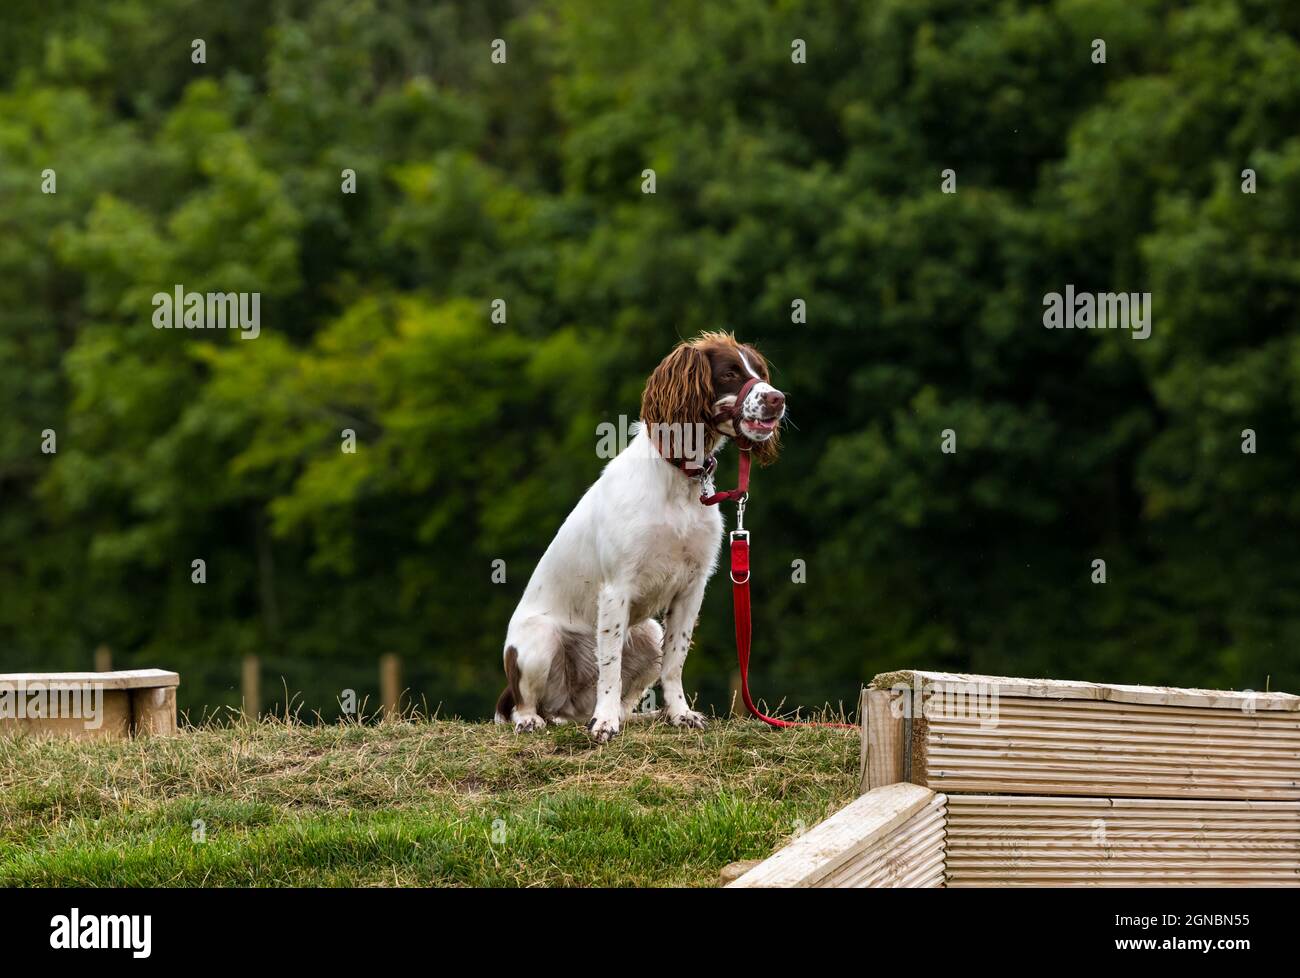 A spaniel at dog training day at Unleashed dog agility park, East Lothian, Scotland, UK Stock Photo